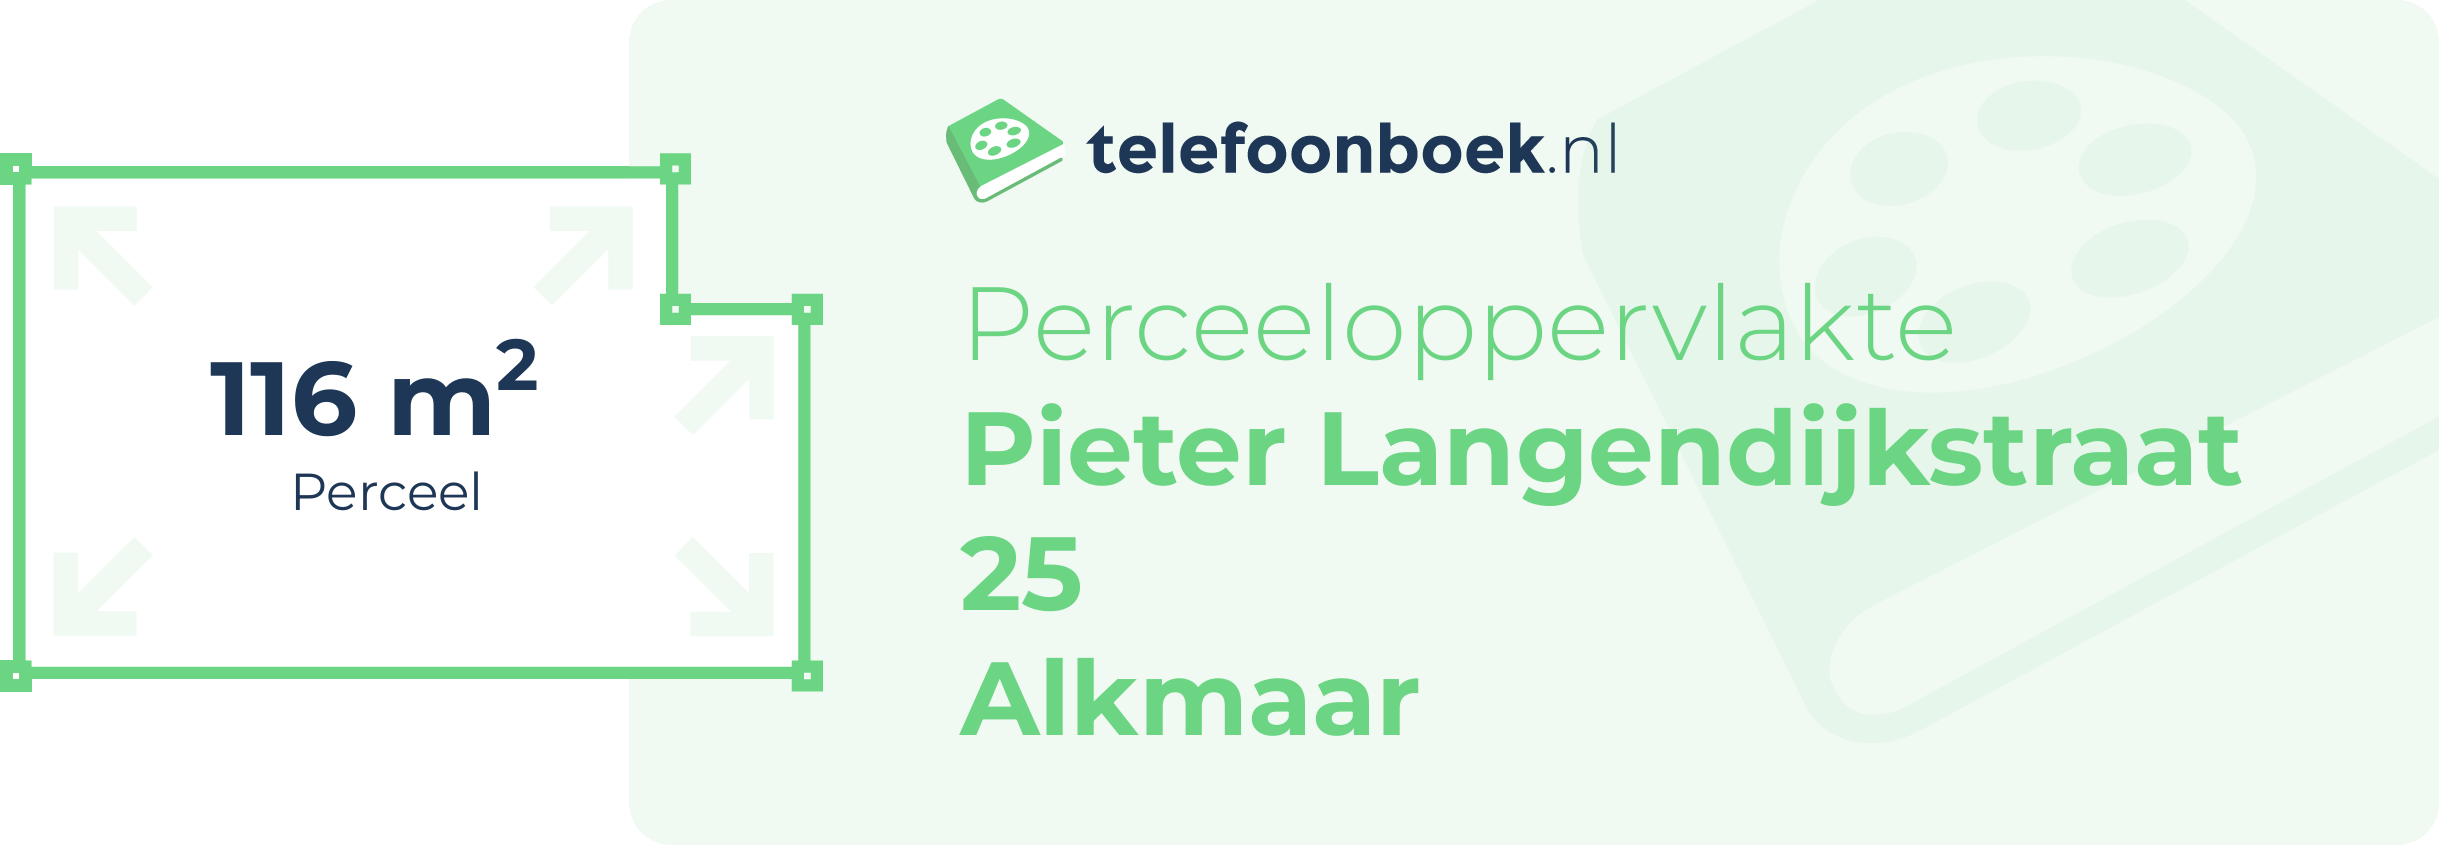 Perceeloppervlakte Pieter Langendijkstraat 25 Alkmaar